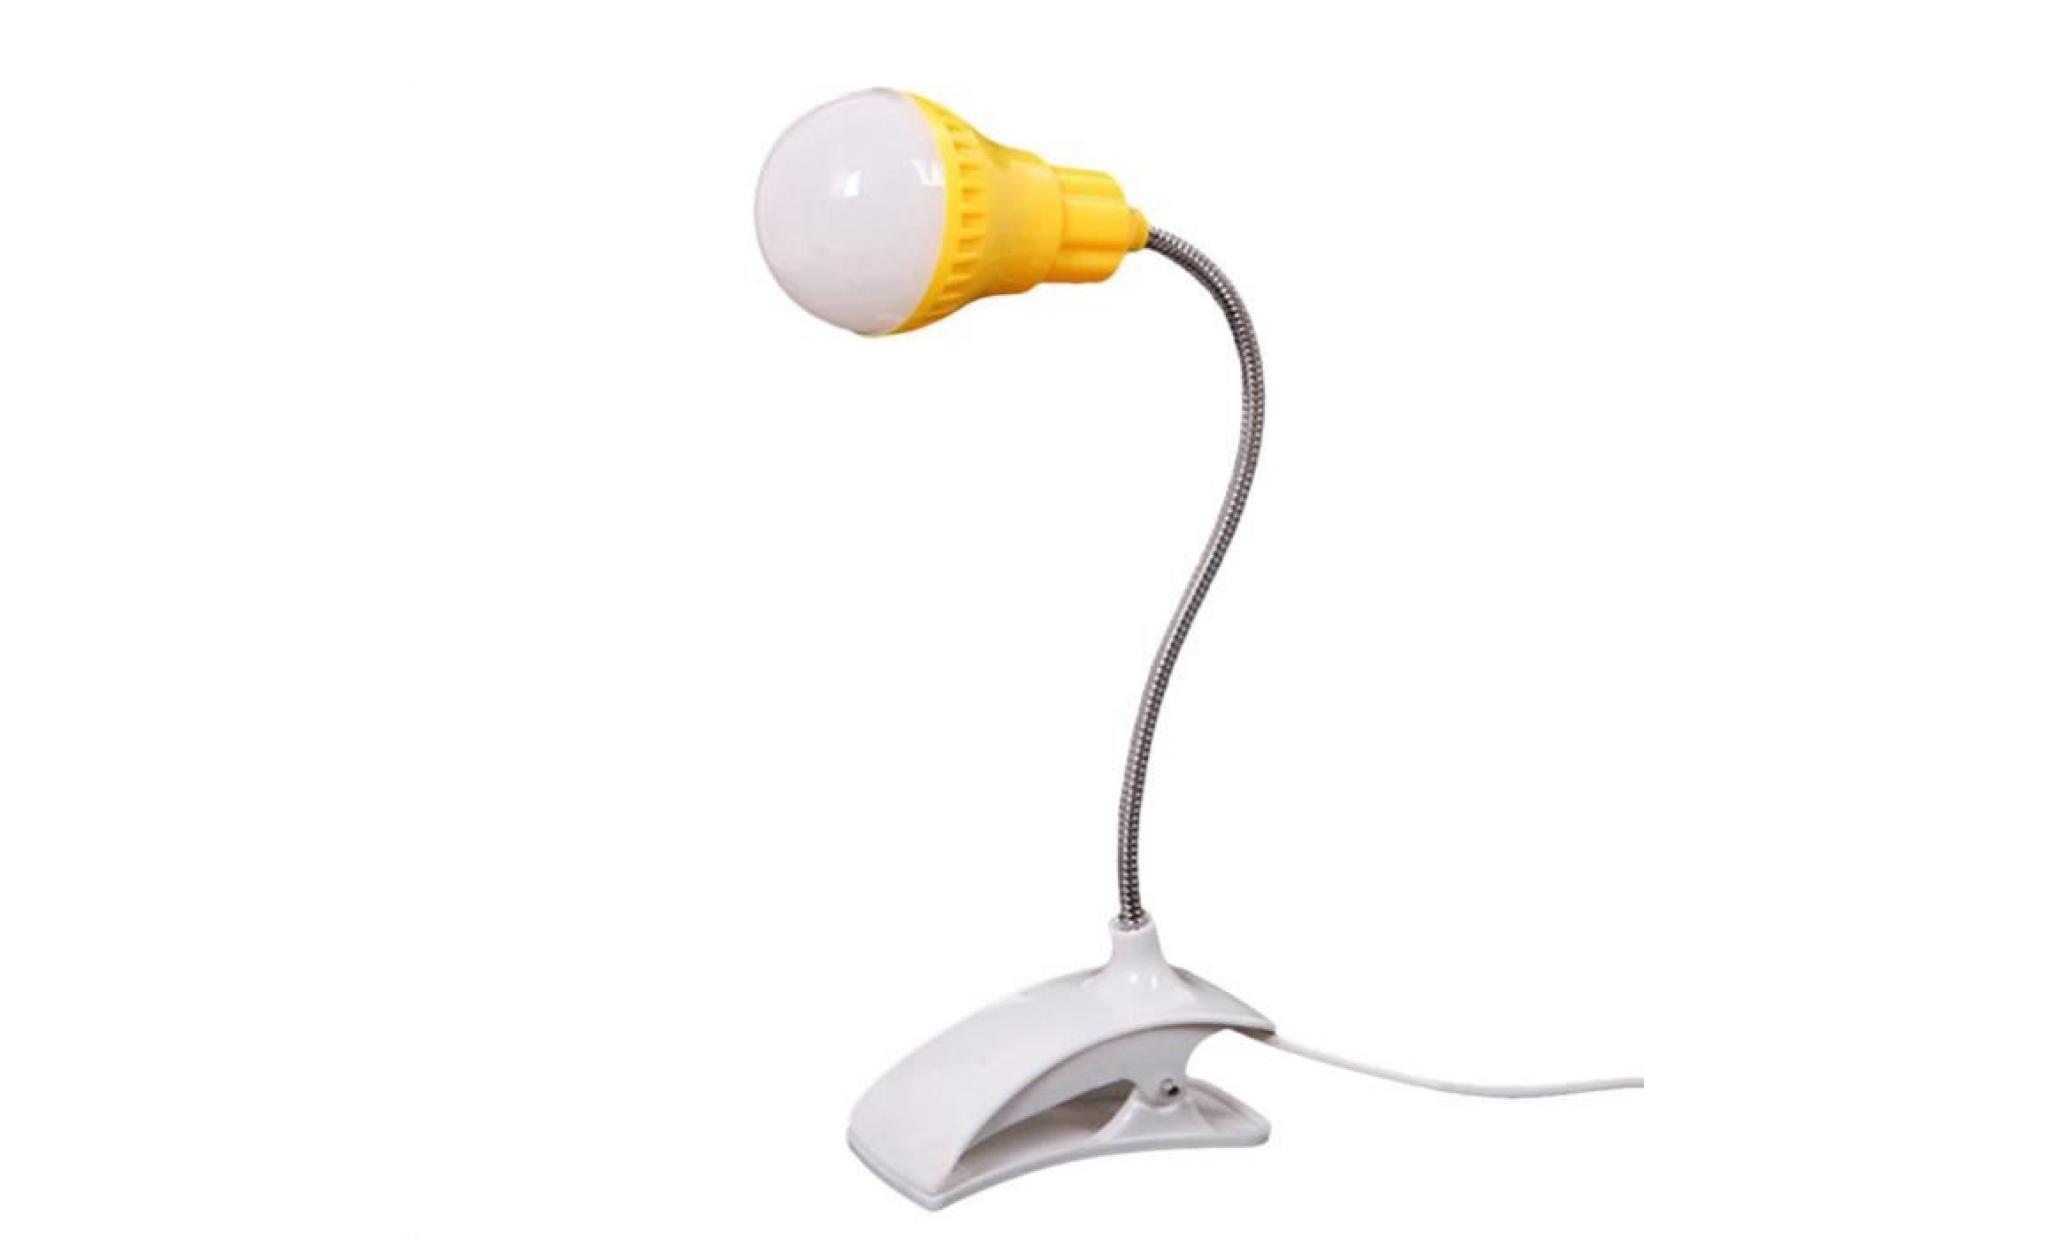 nouveau support de table lampe usb du personnel étudiant de lecture table bureau lampe wh @qw1892 pas cher